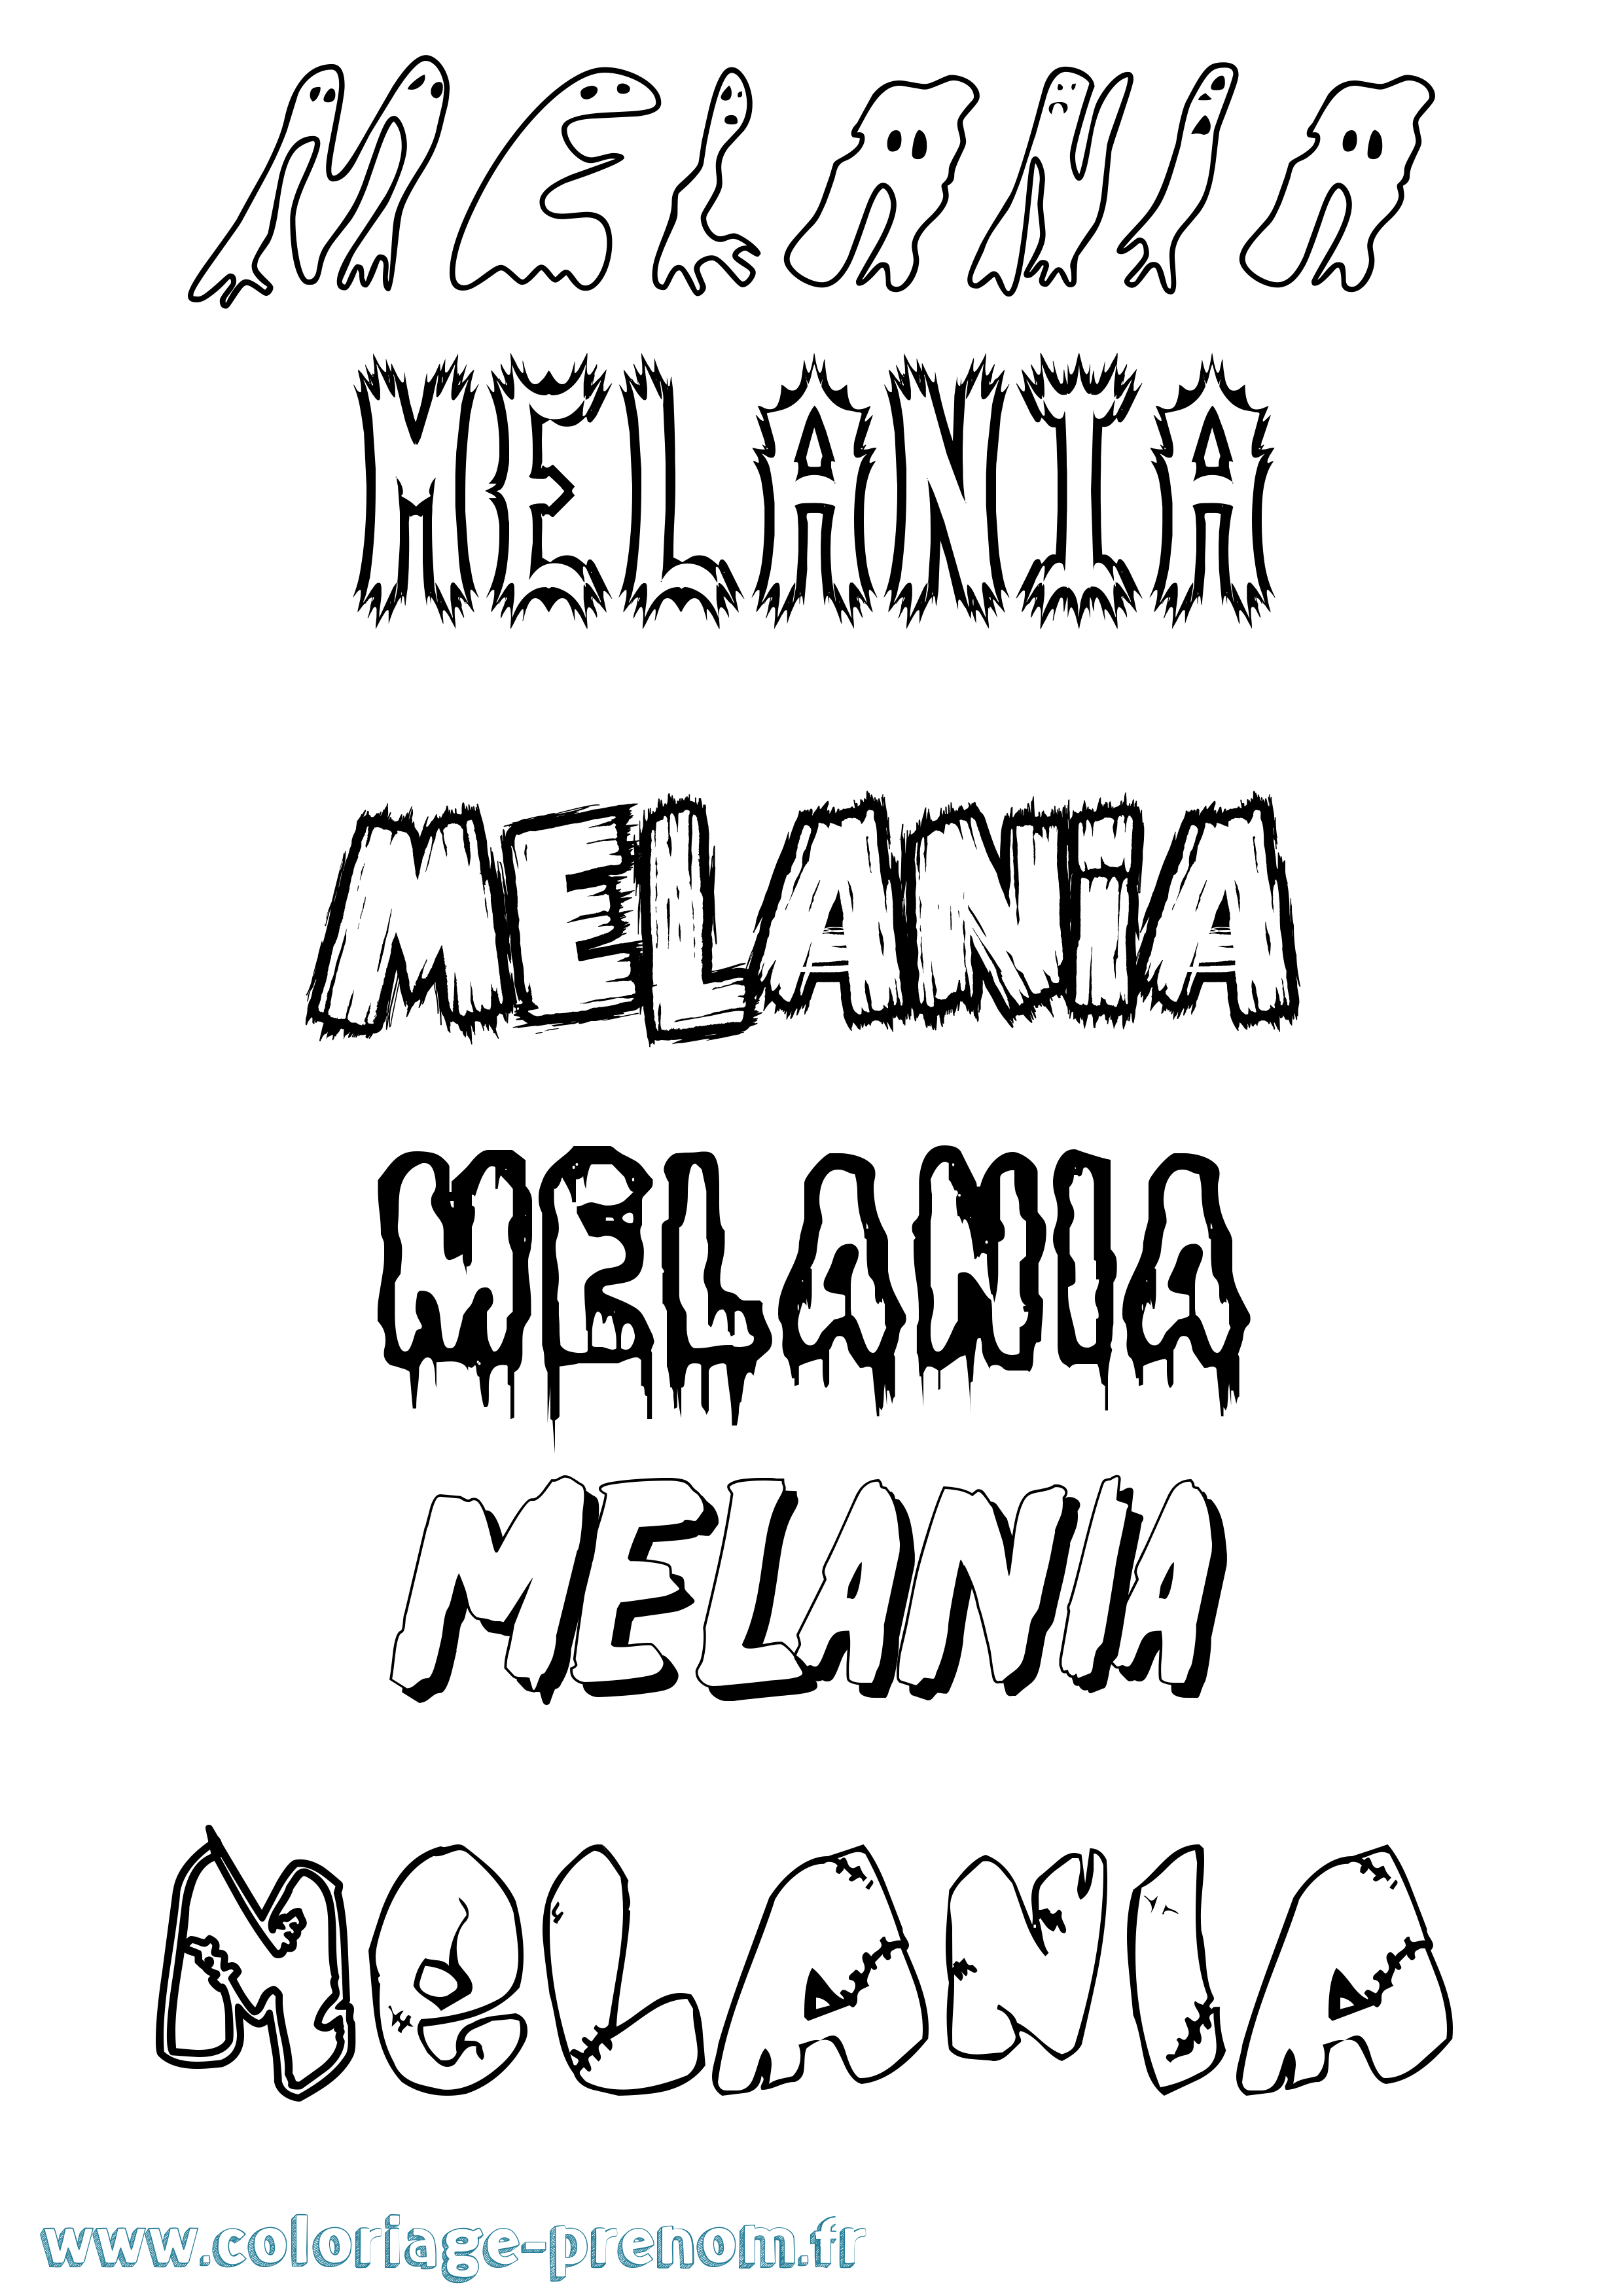 Coloriage prénom Melania Frisson